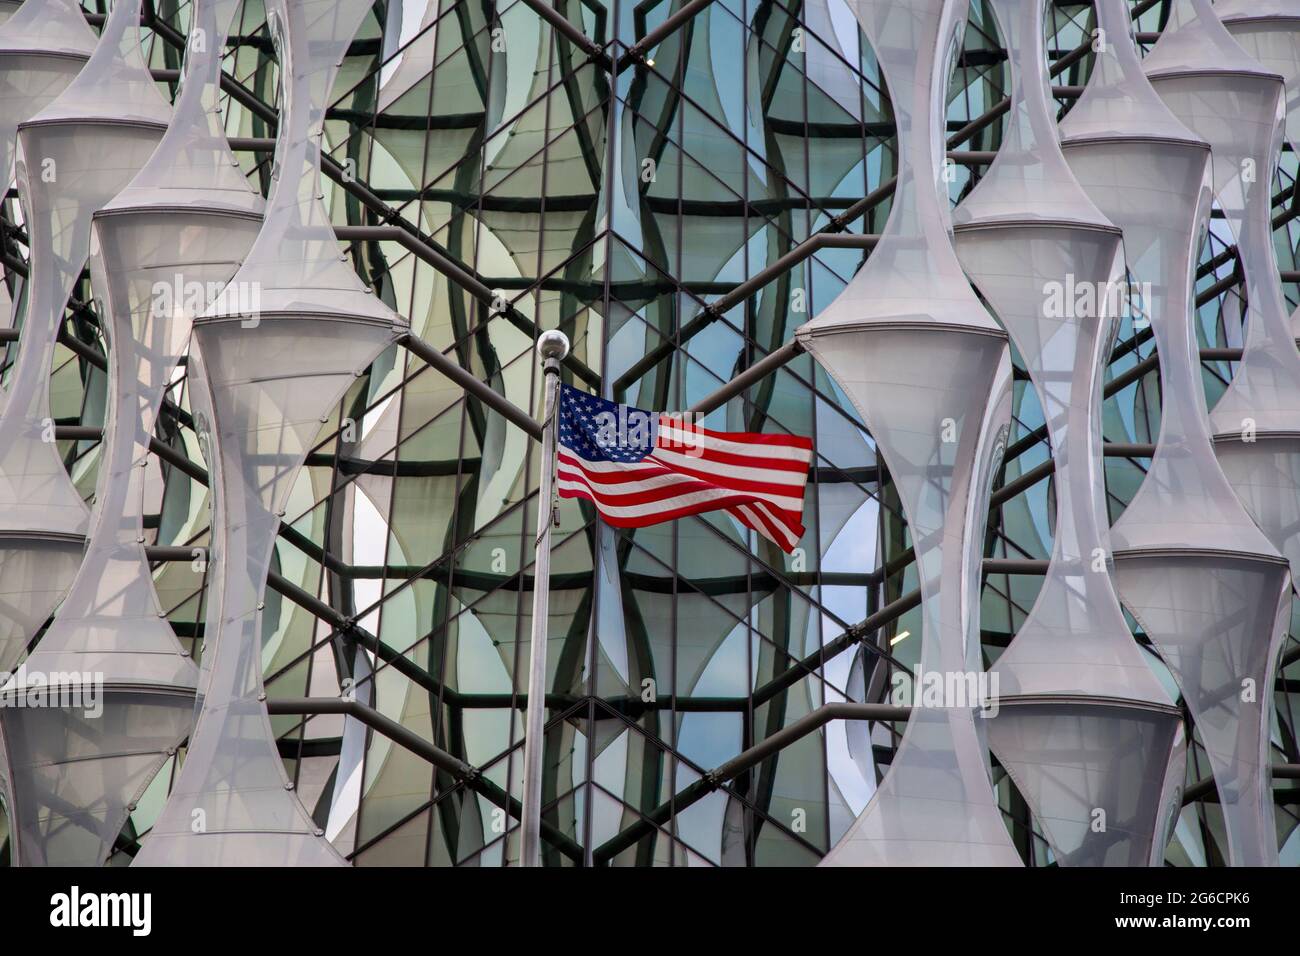 Bandiera americana di fronte alla nuova ambasciata americana progettata dagli architetti KieranTimberlake nel nuovo distretto di sviluppo di Londra Nine Elms. Foto Stock